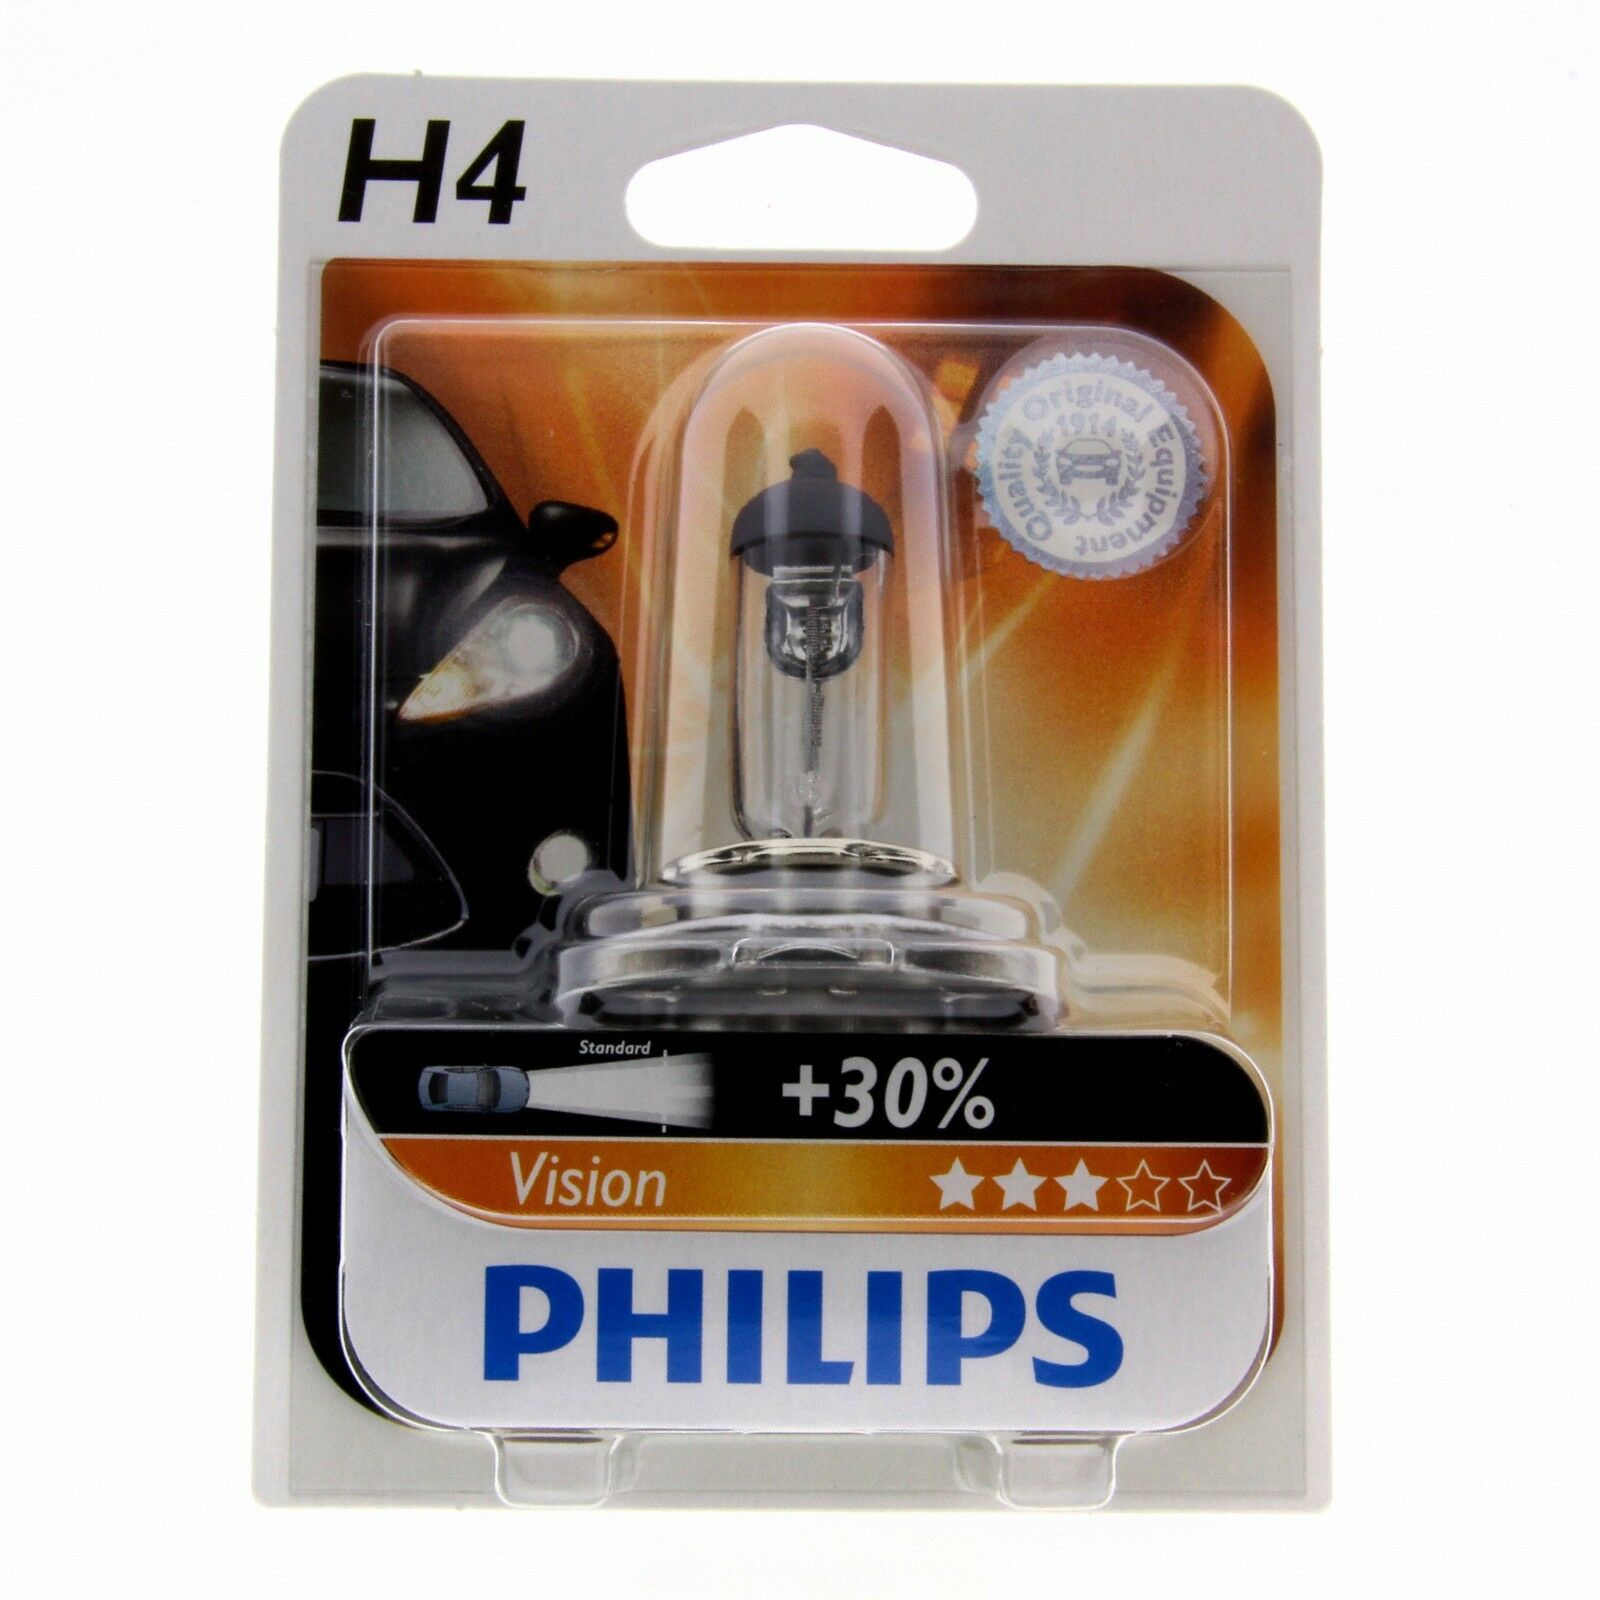 H4 Philips Vision Halogenlampe bis zu 30% mehr Licht 12342PR Blister 1 Stück